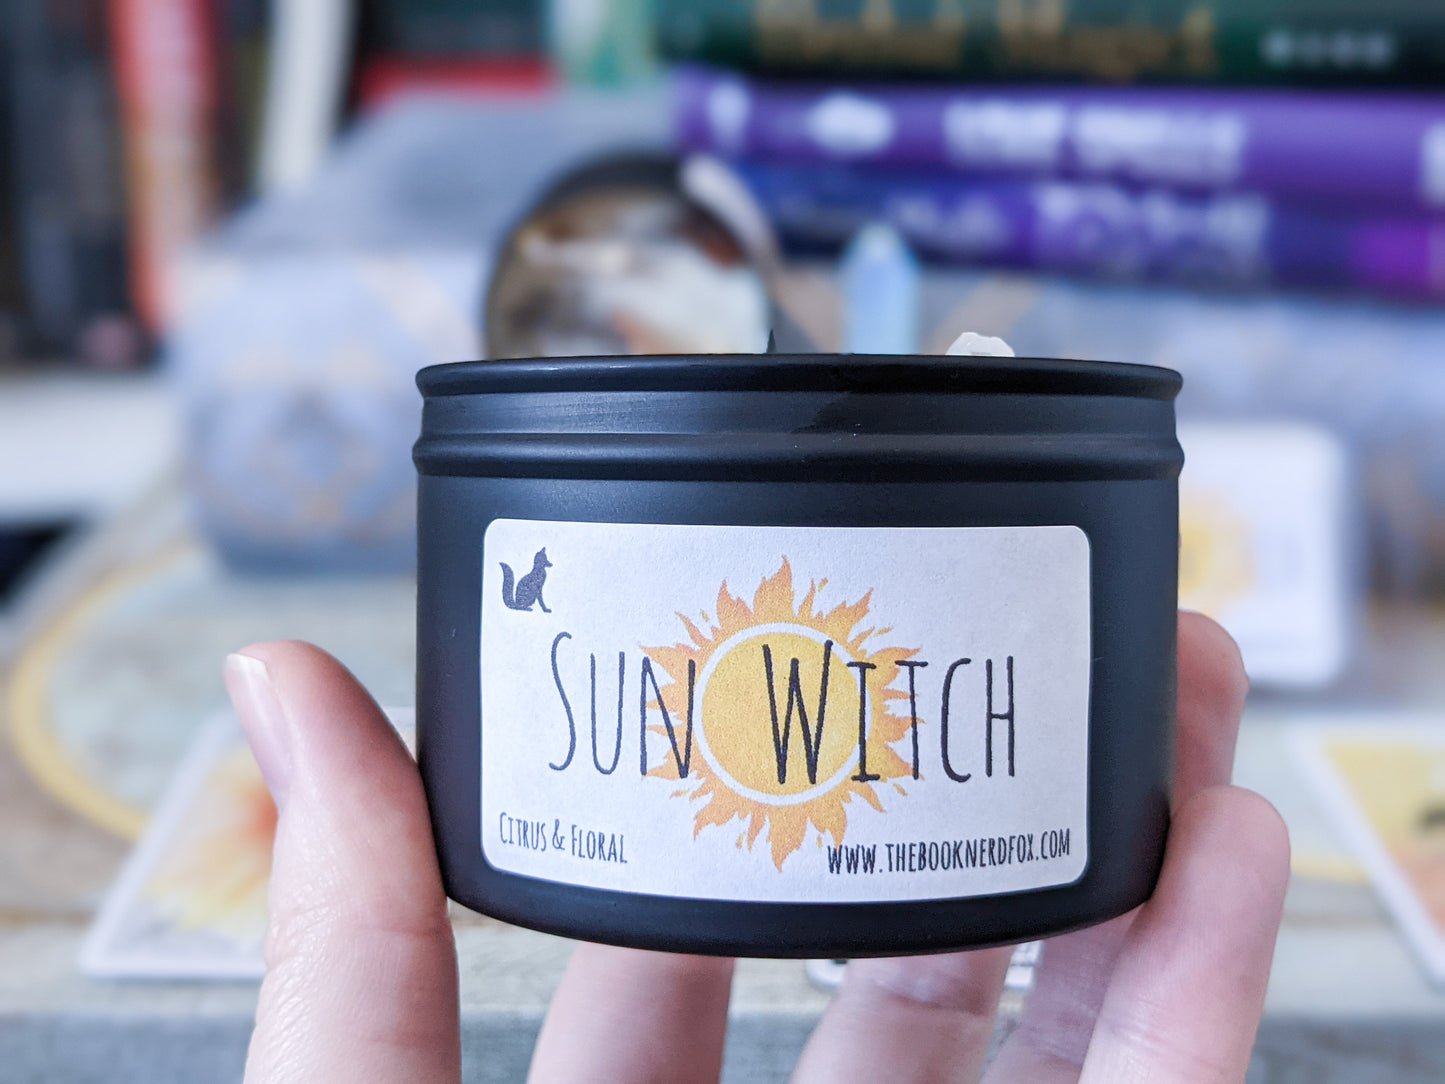 Sun Witch - Citrus & Floral